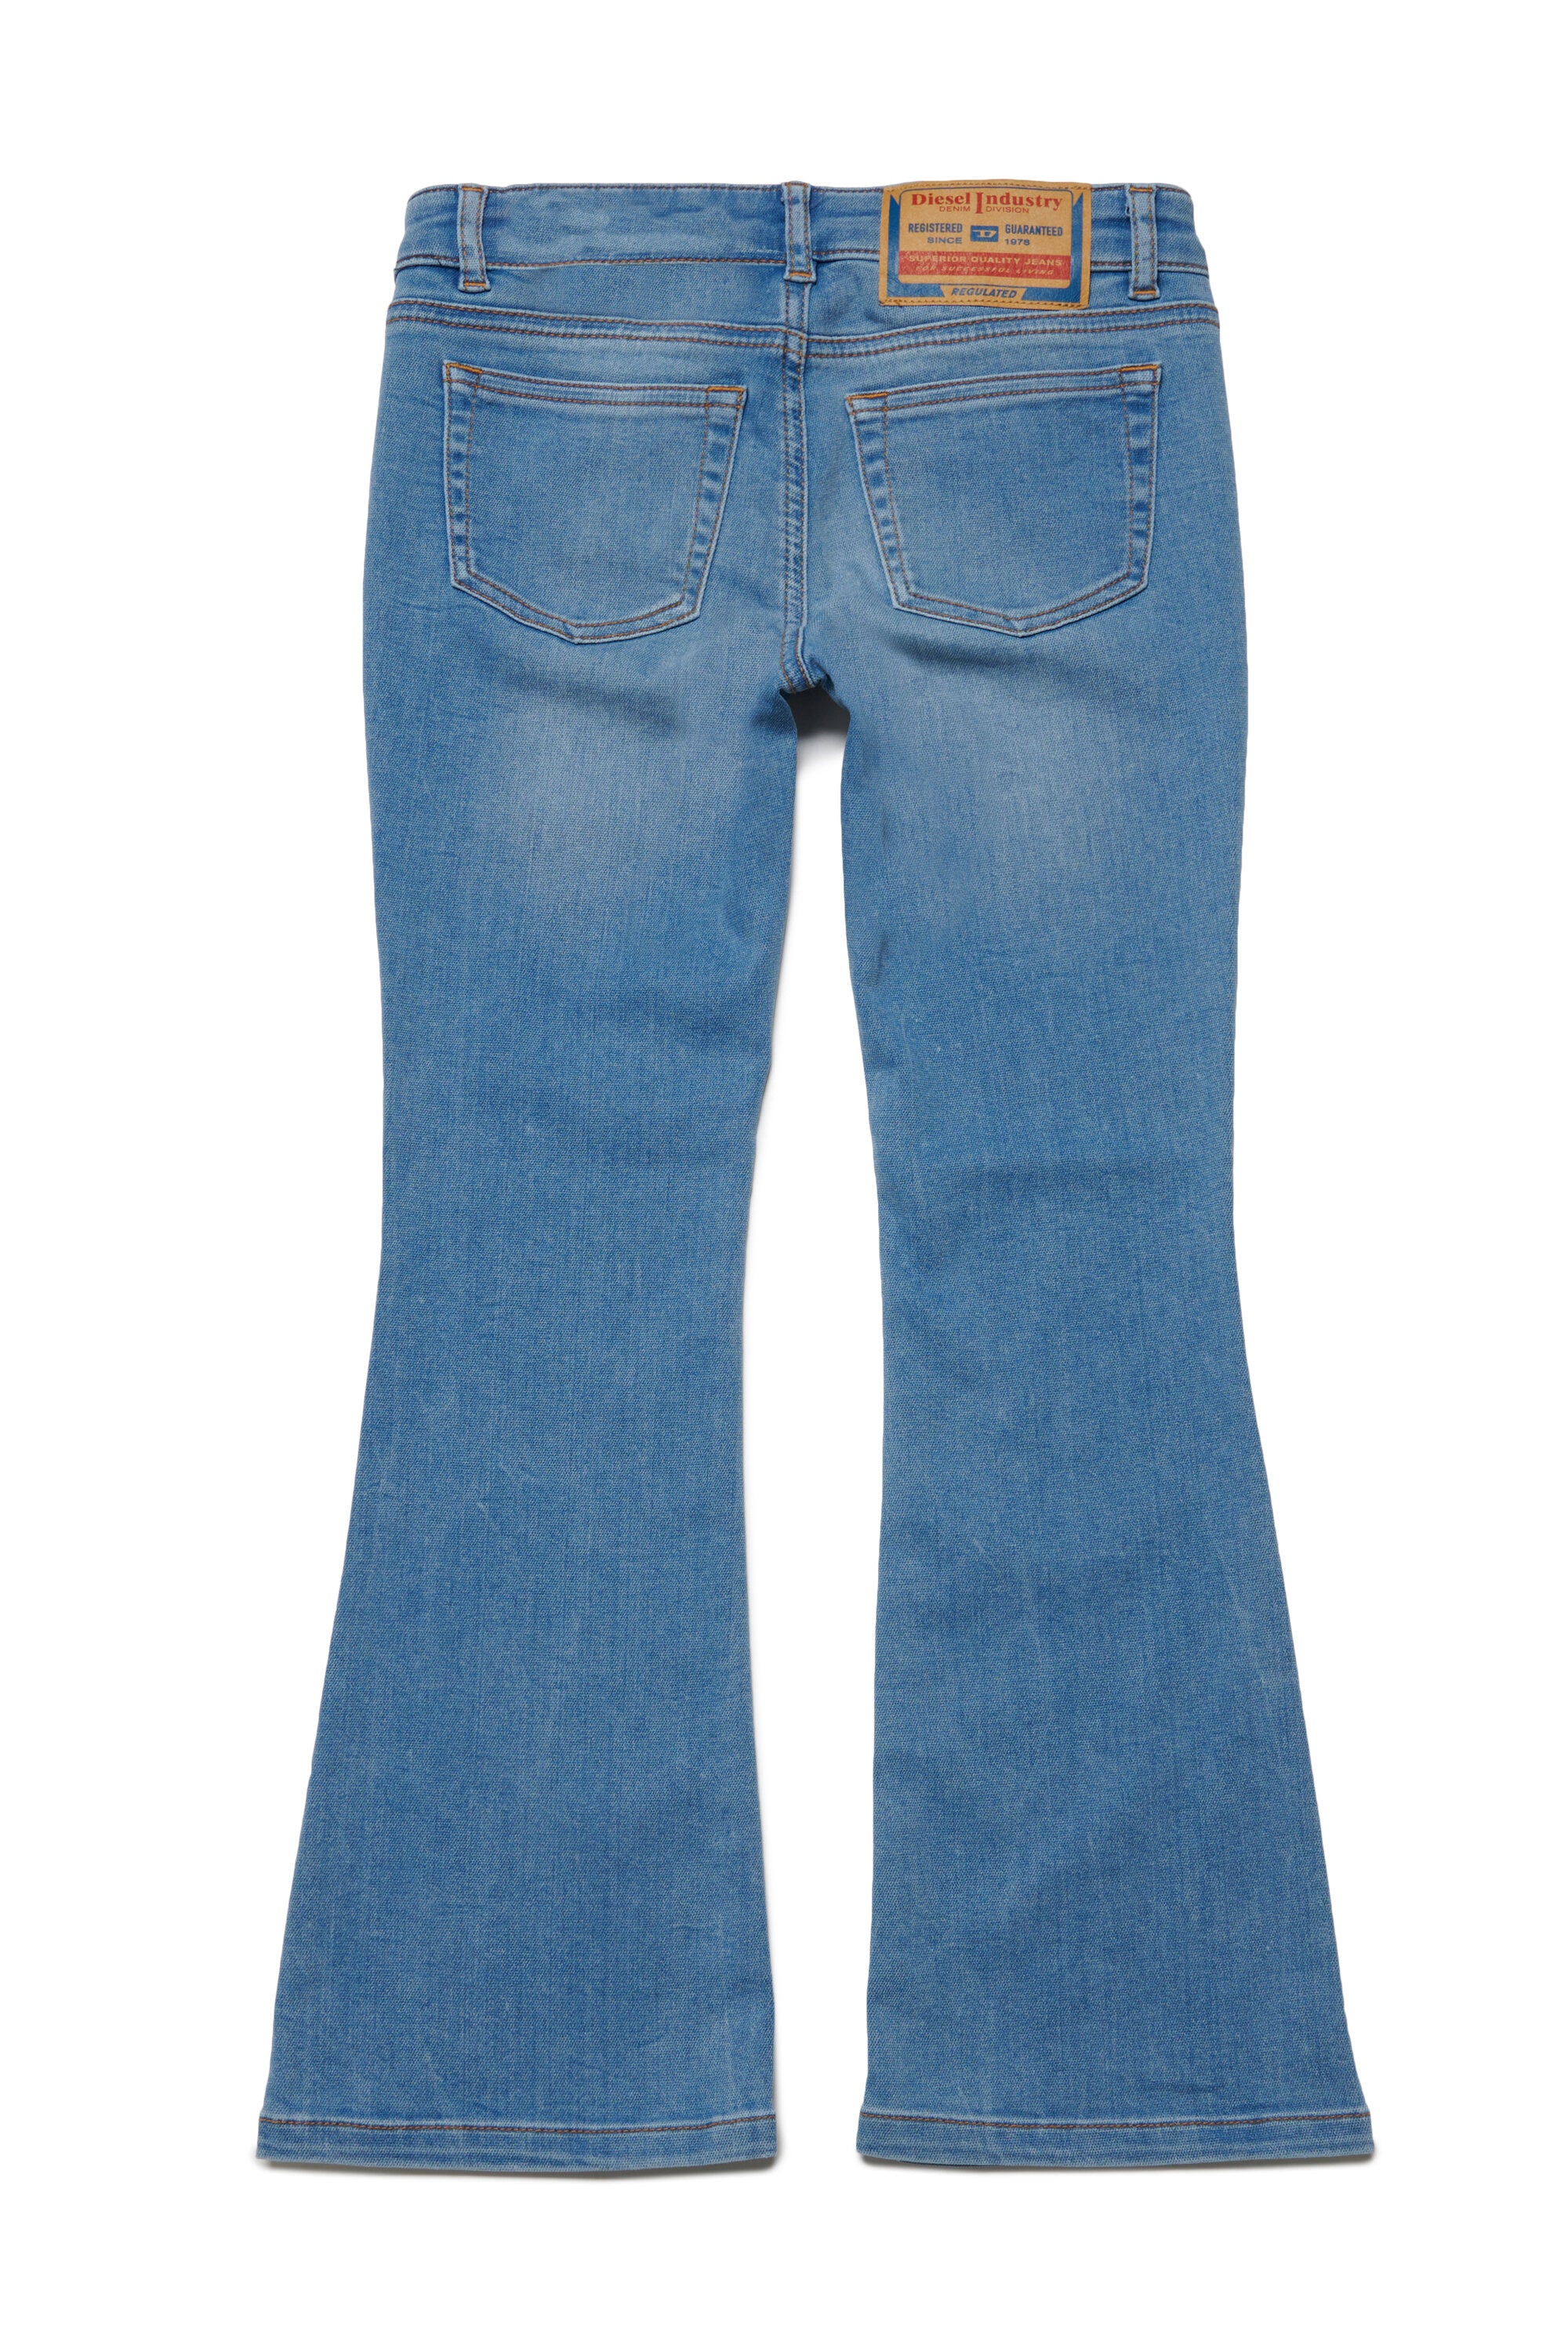 JoggJeans® bootcut chiaro sfumato - 1969 D-Ebbey